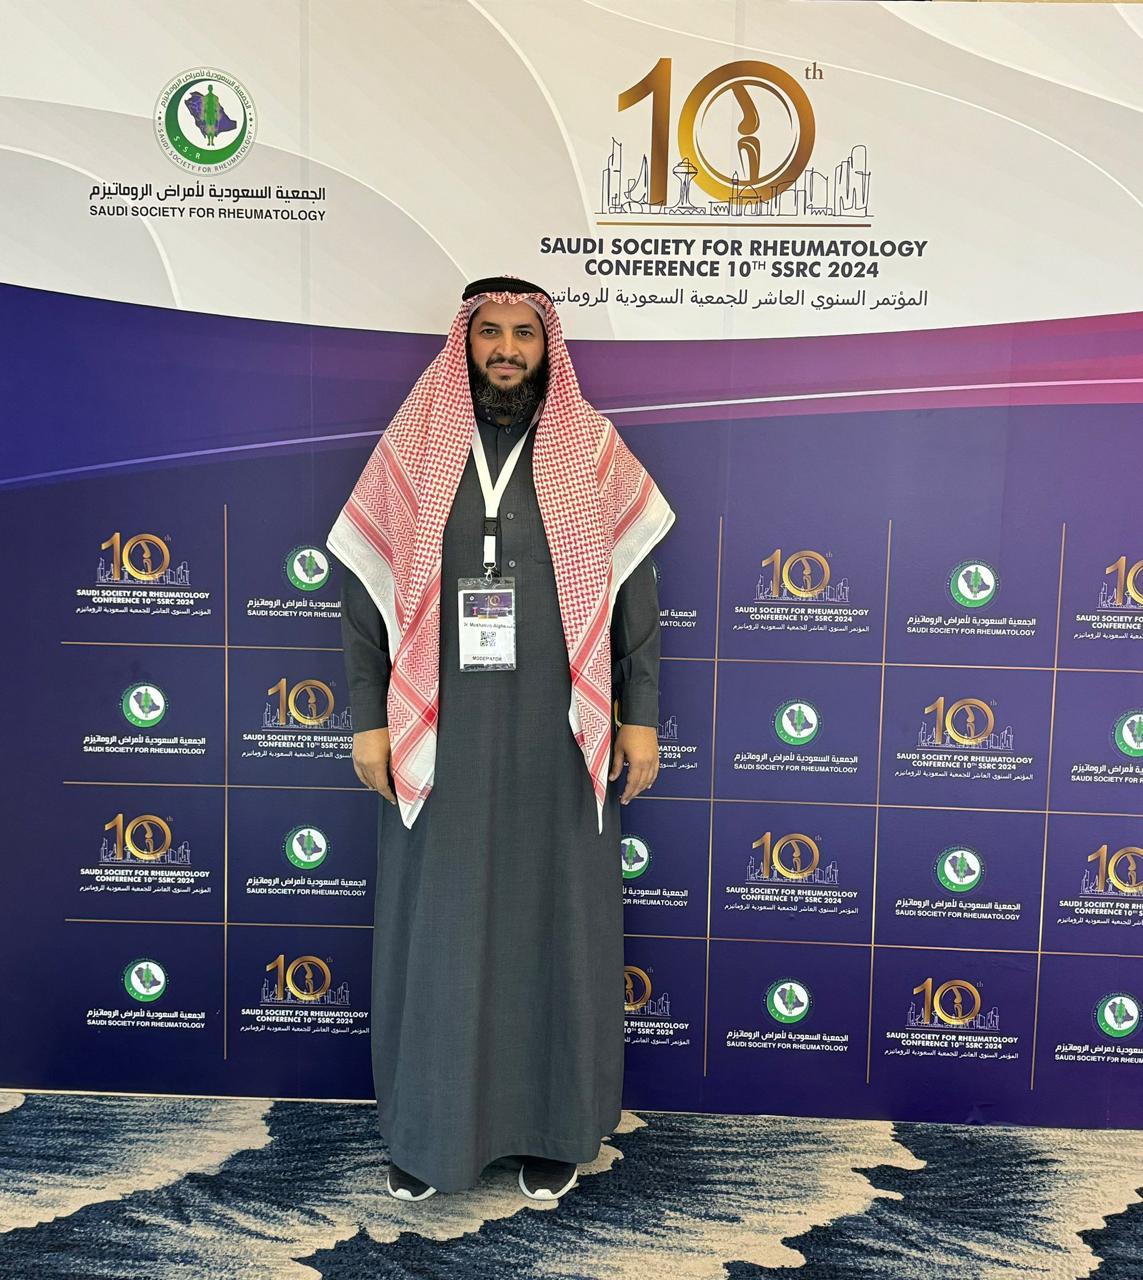 مشاركة وكيل الكلية في المؤتمر الدولي العاشر للجمعية السعودية لأمراض الروماتيزم